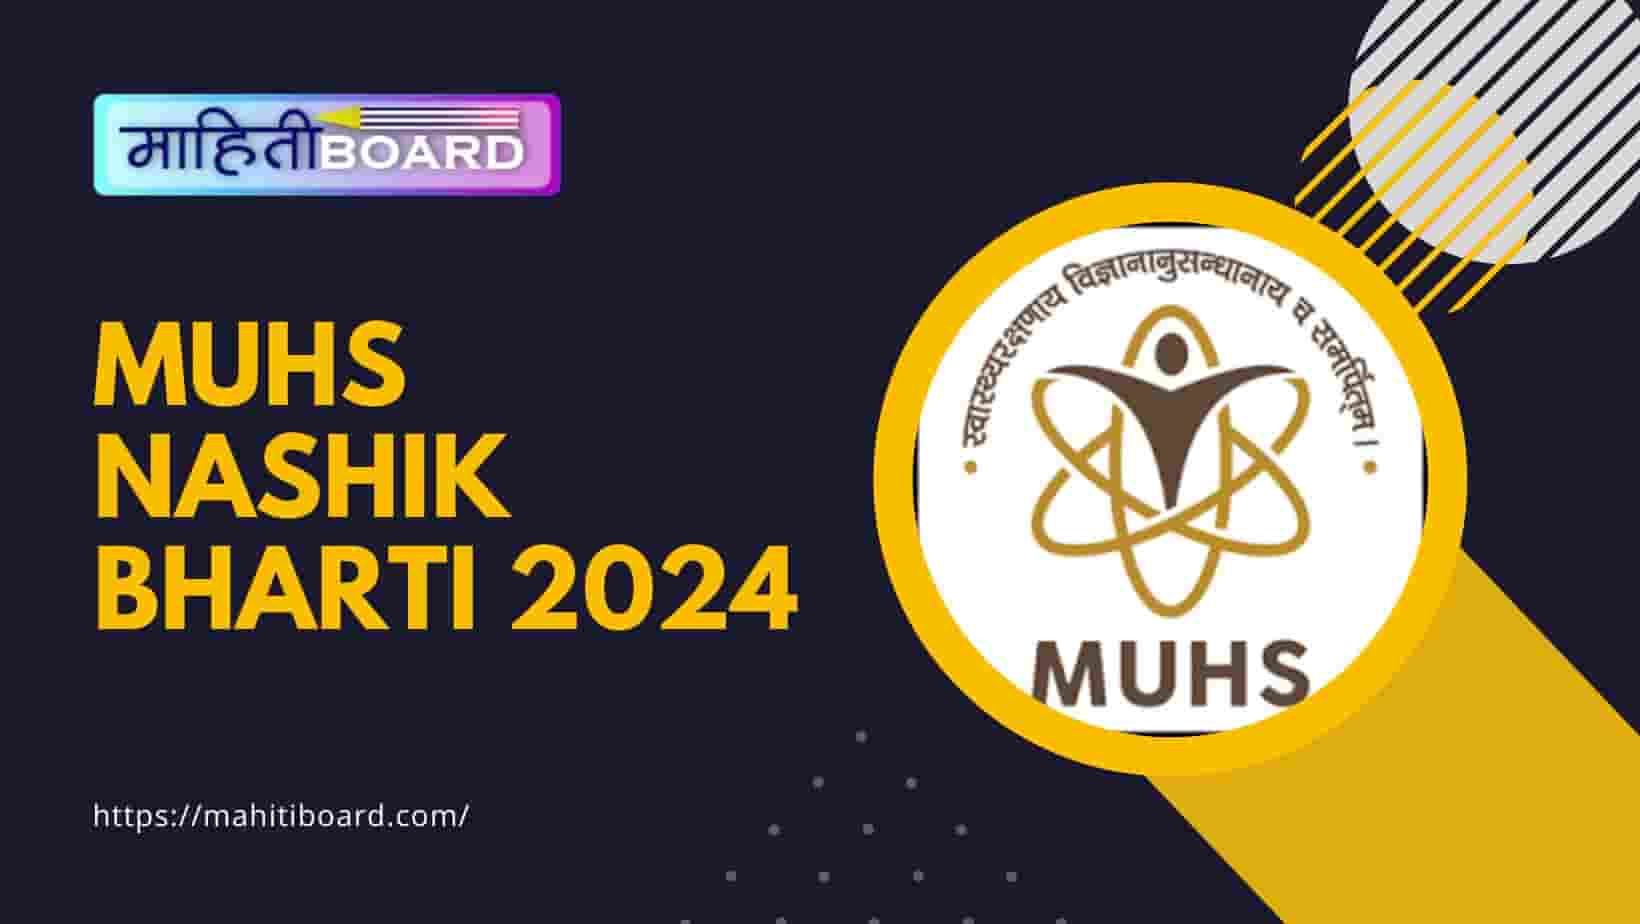 MUHS Nashik Bharti 2024